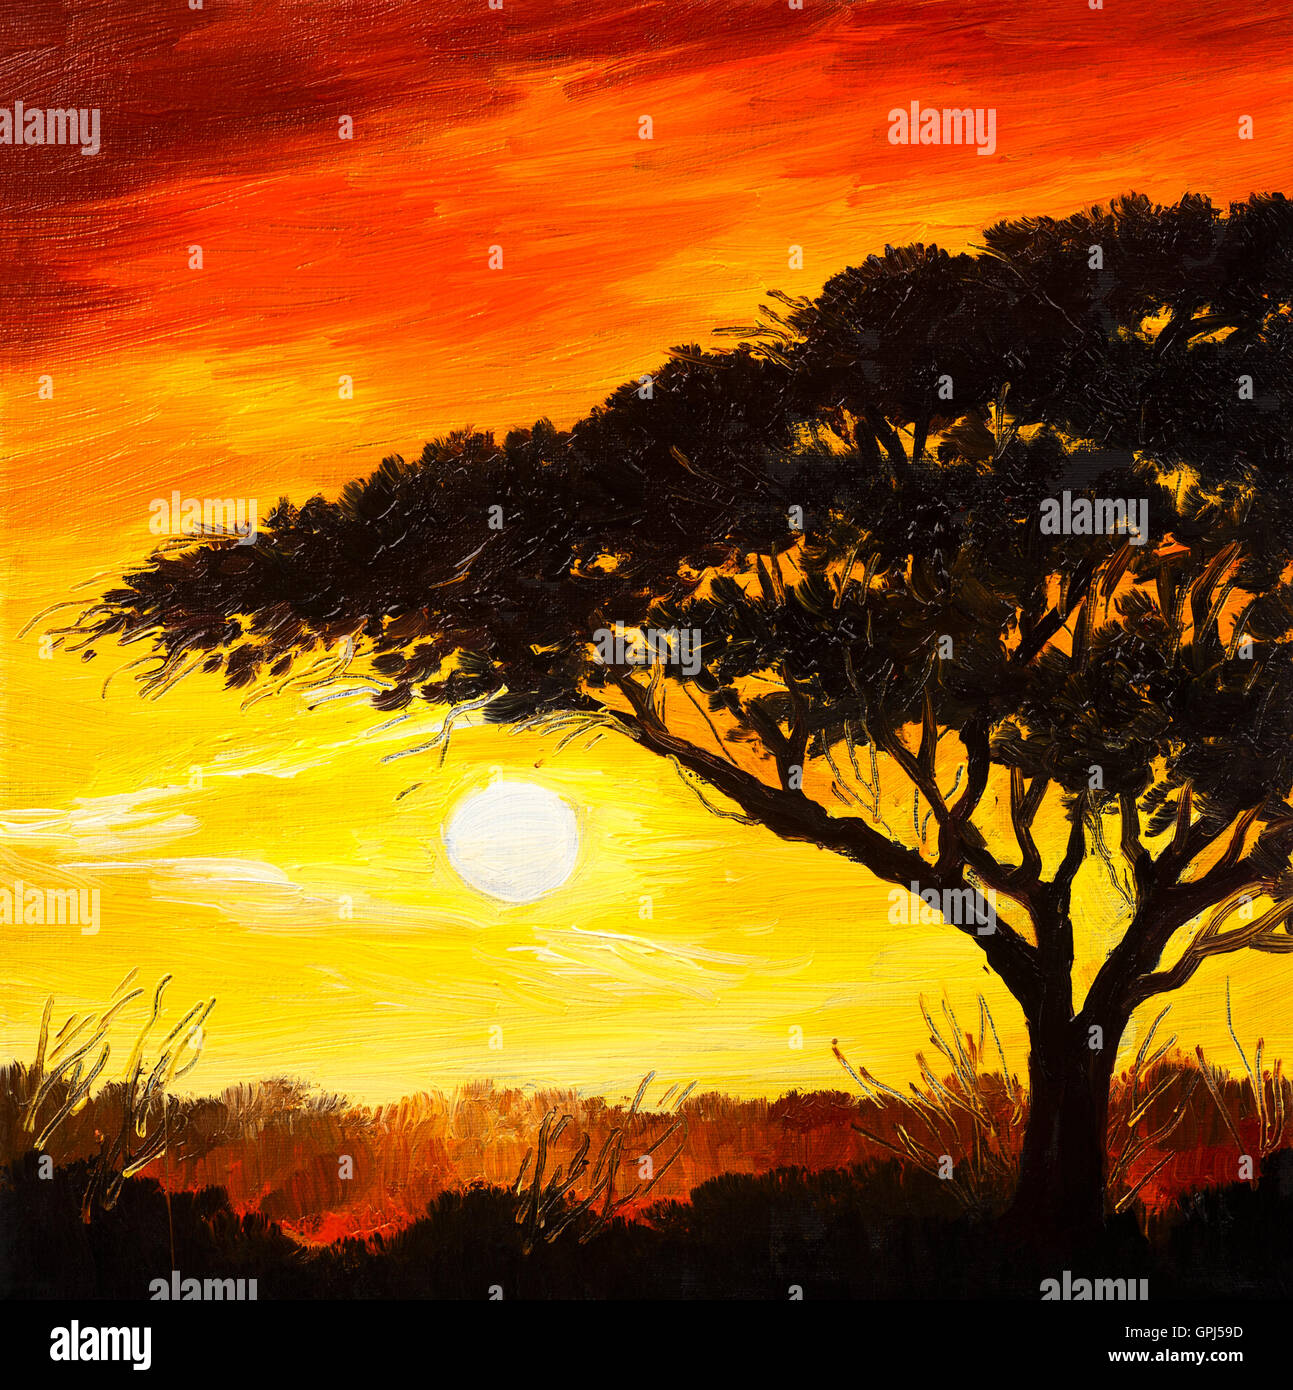 Paysage peinture à l'huile - coucher de soleil dans la forêt, papier peint, plein soleil Banque D'Images